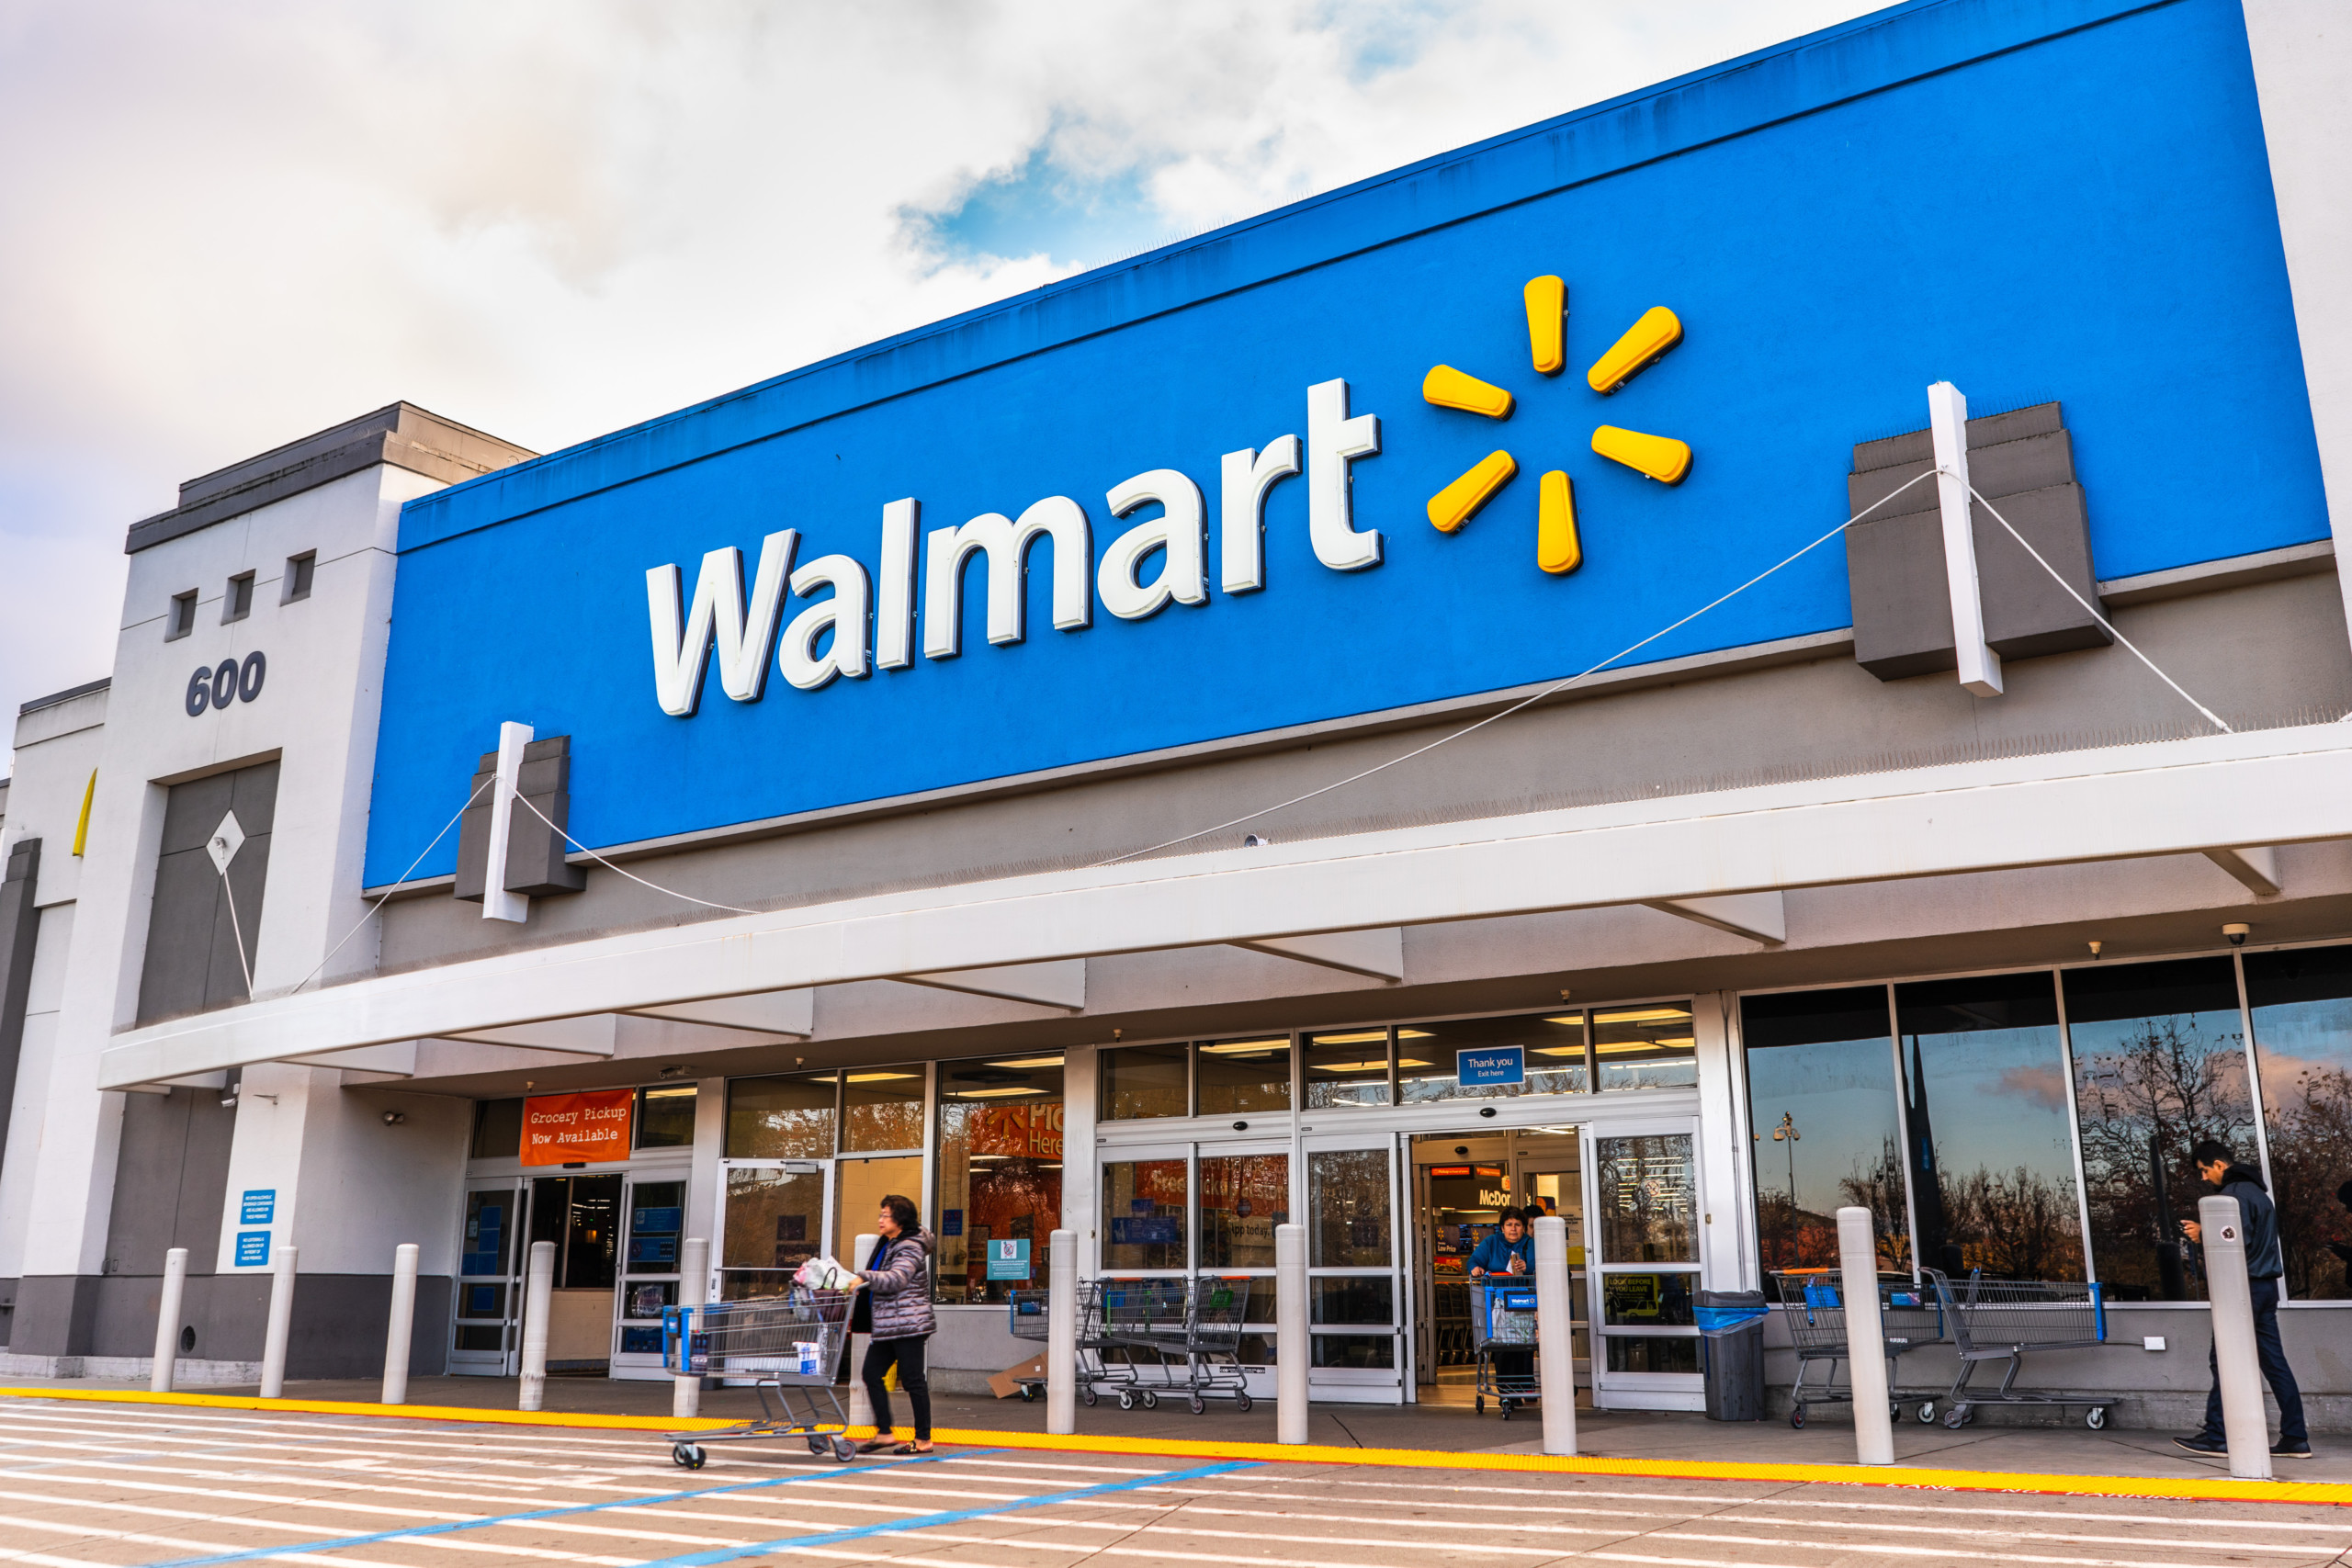 Walmart startet solide in das laufende Jahr – Ausblick angehoben